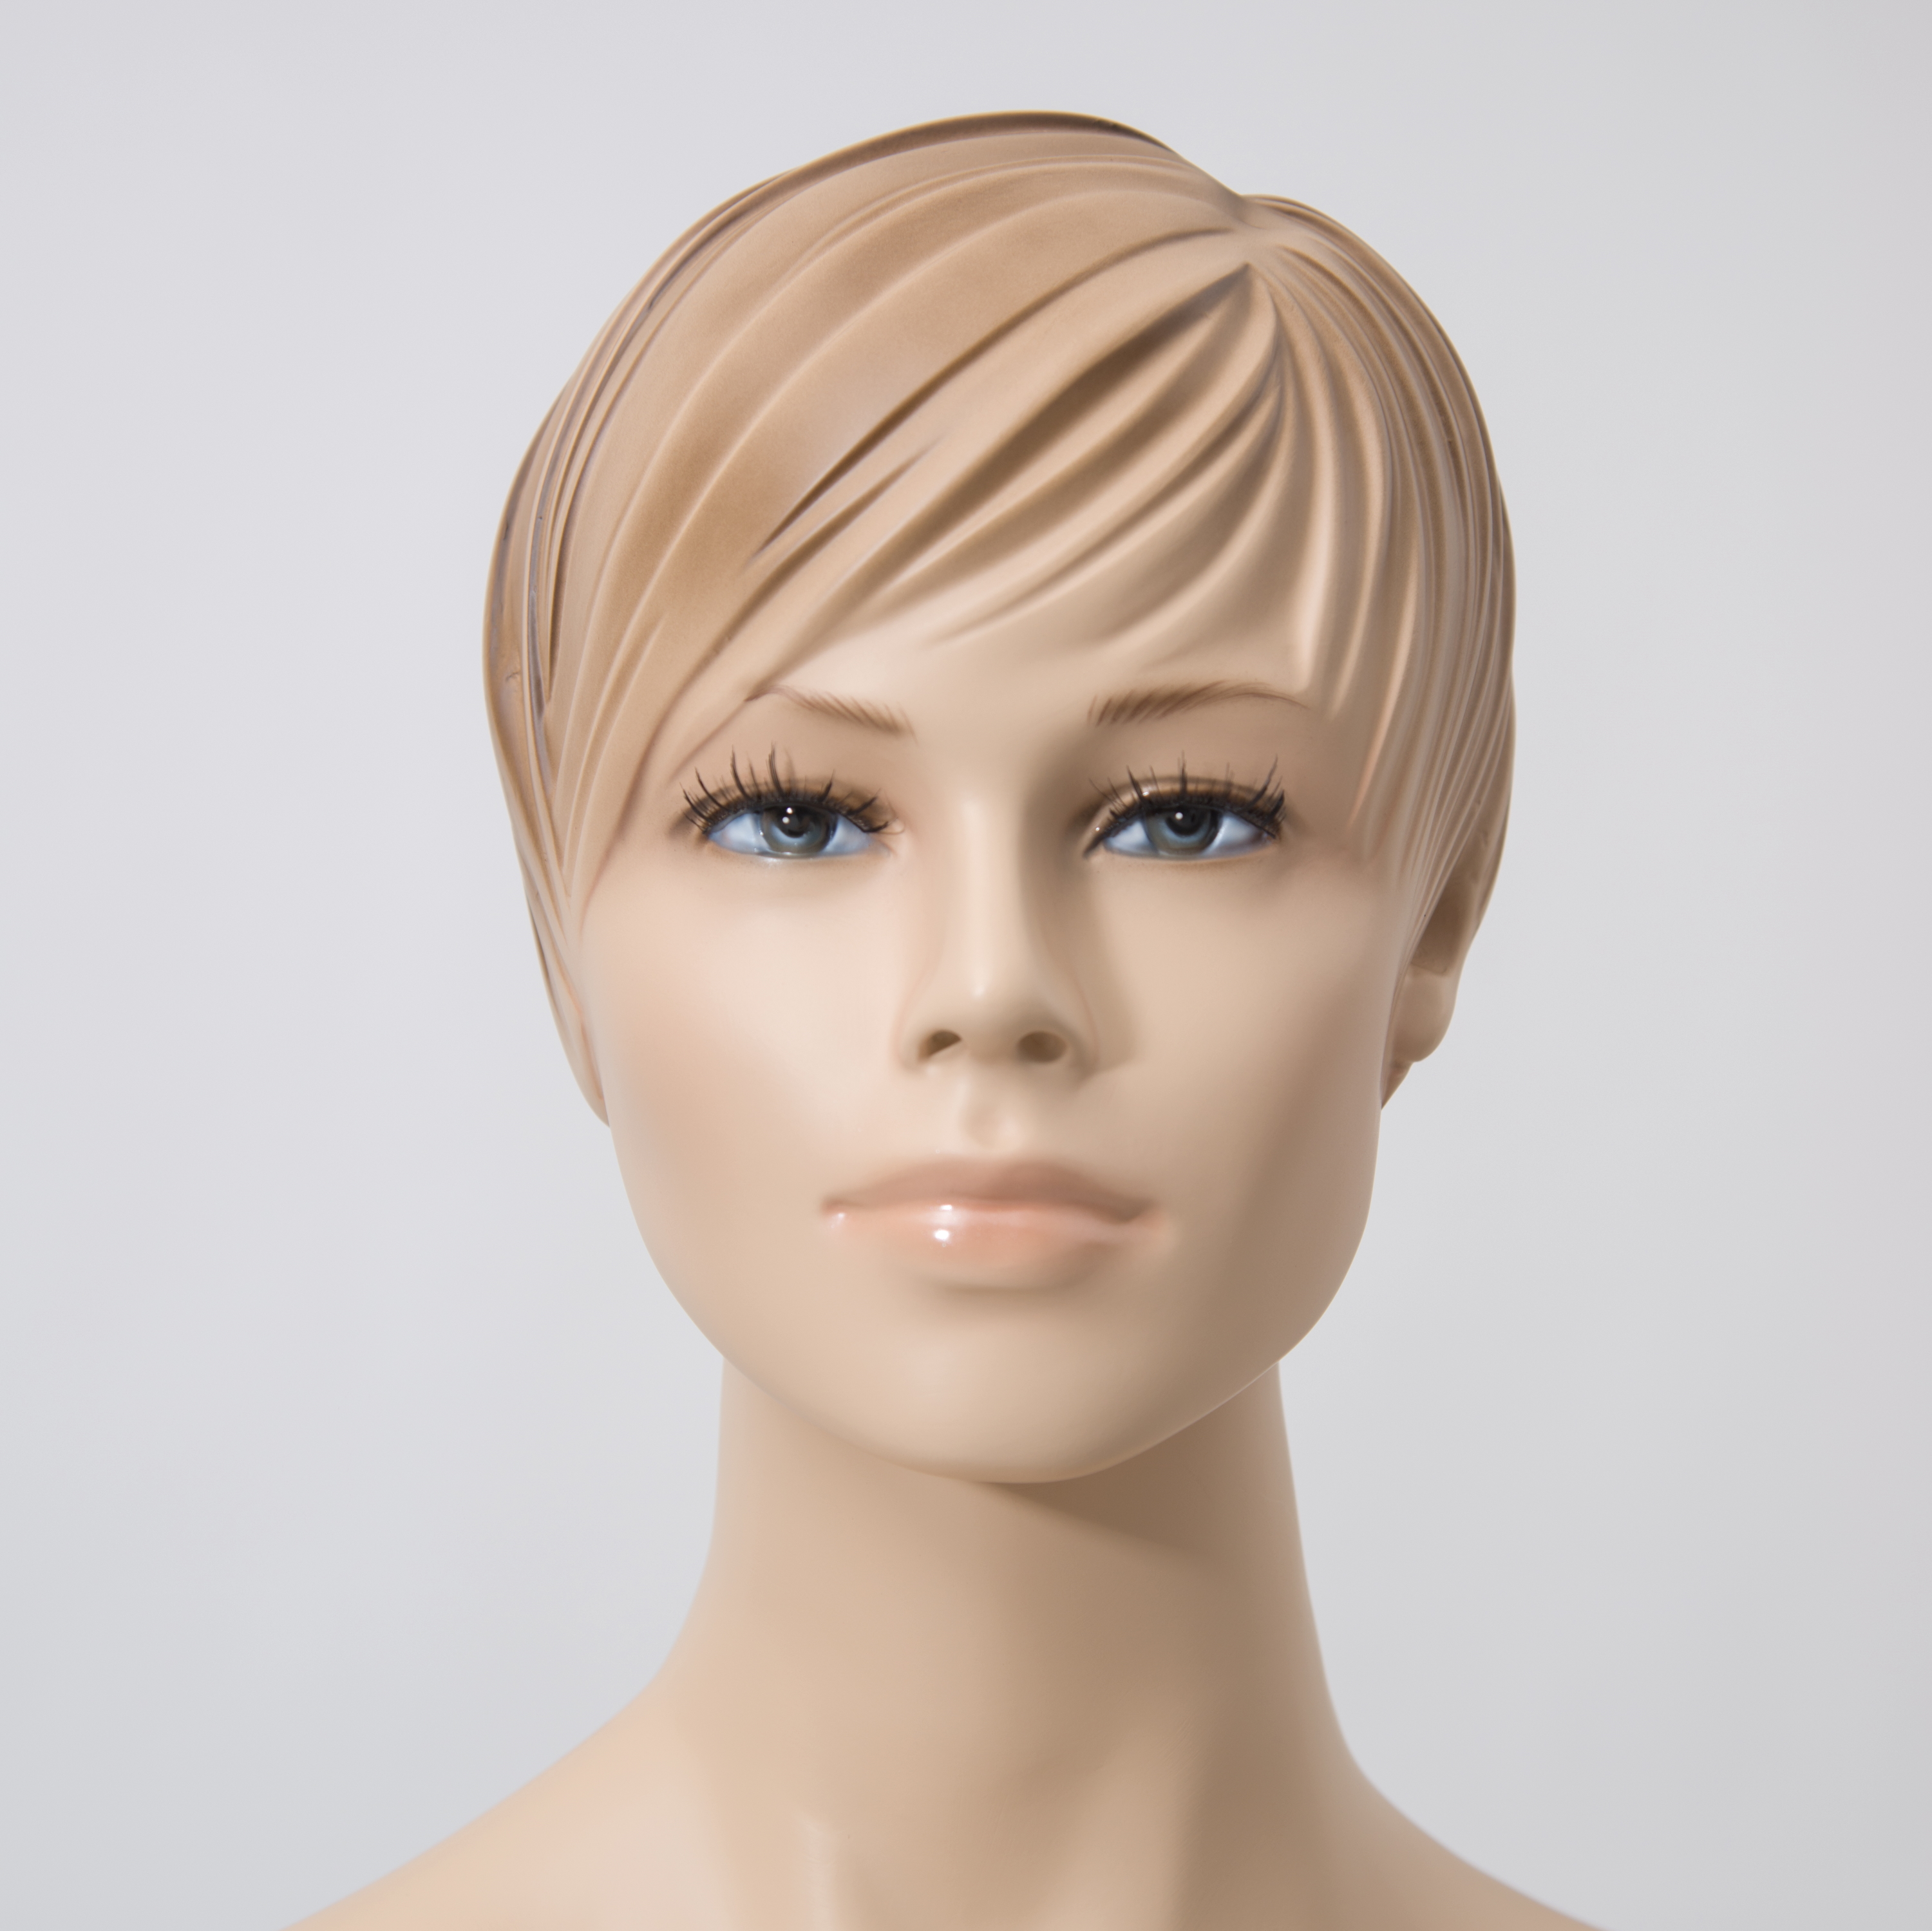 Schaufensterfigur EVO Dame, Konfektionsgröße 46, hautfarbe, mit modelliertem Haar, aus Fiberglas, inkl. Glasstandplatte rund 38cm